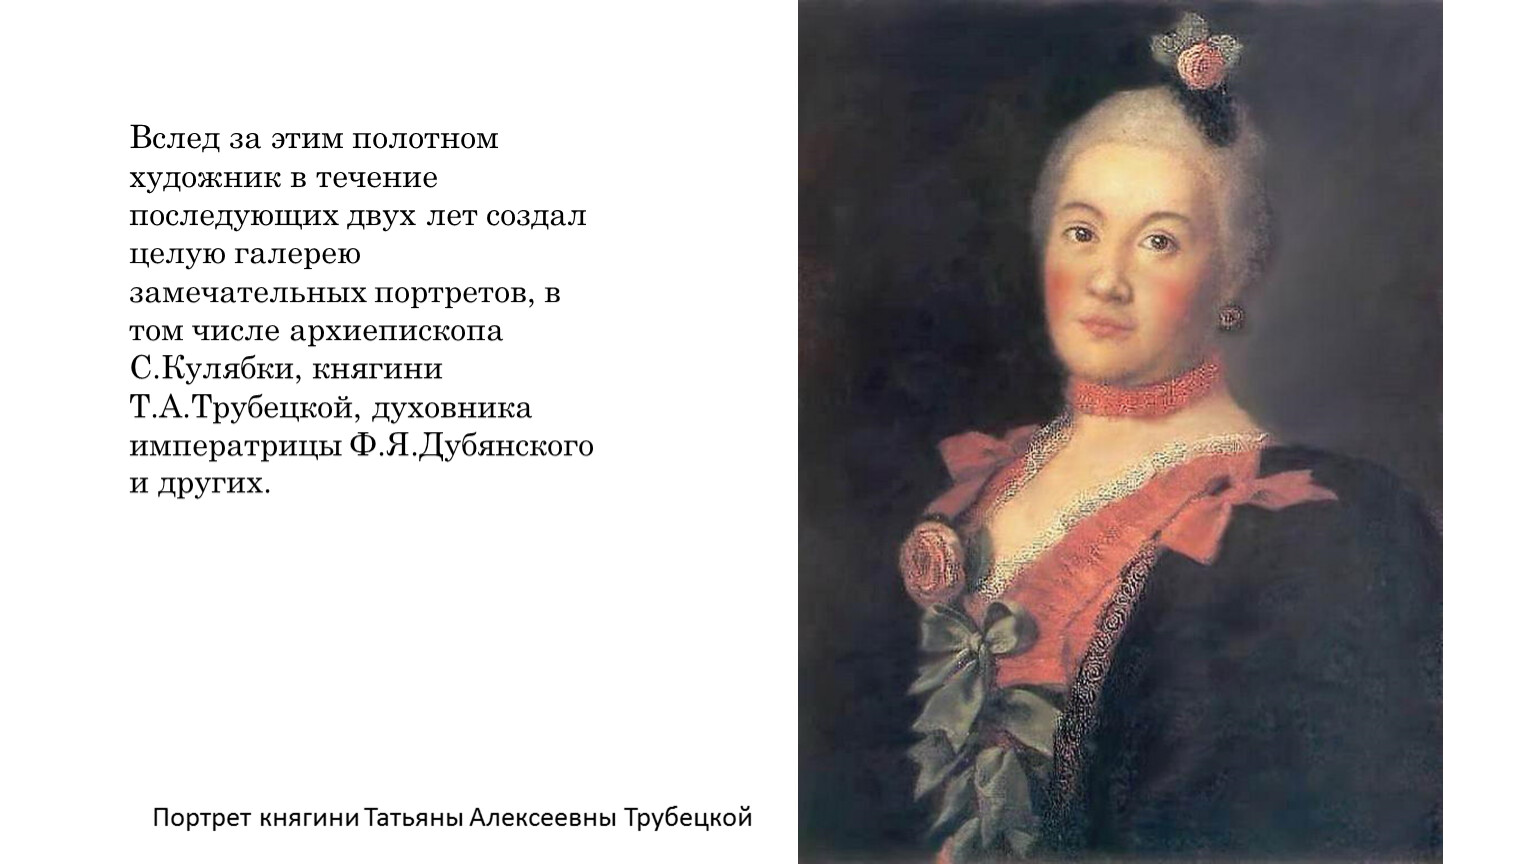 Антропов портрет Дубянского